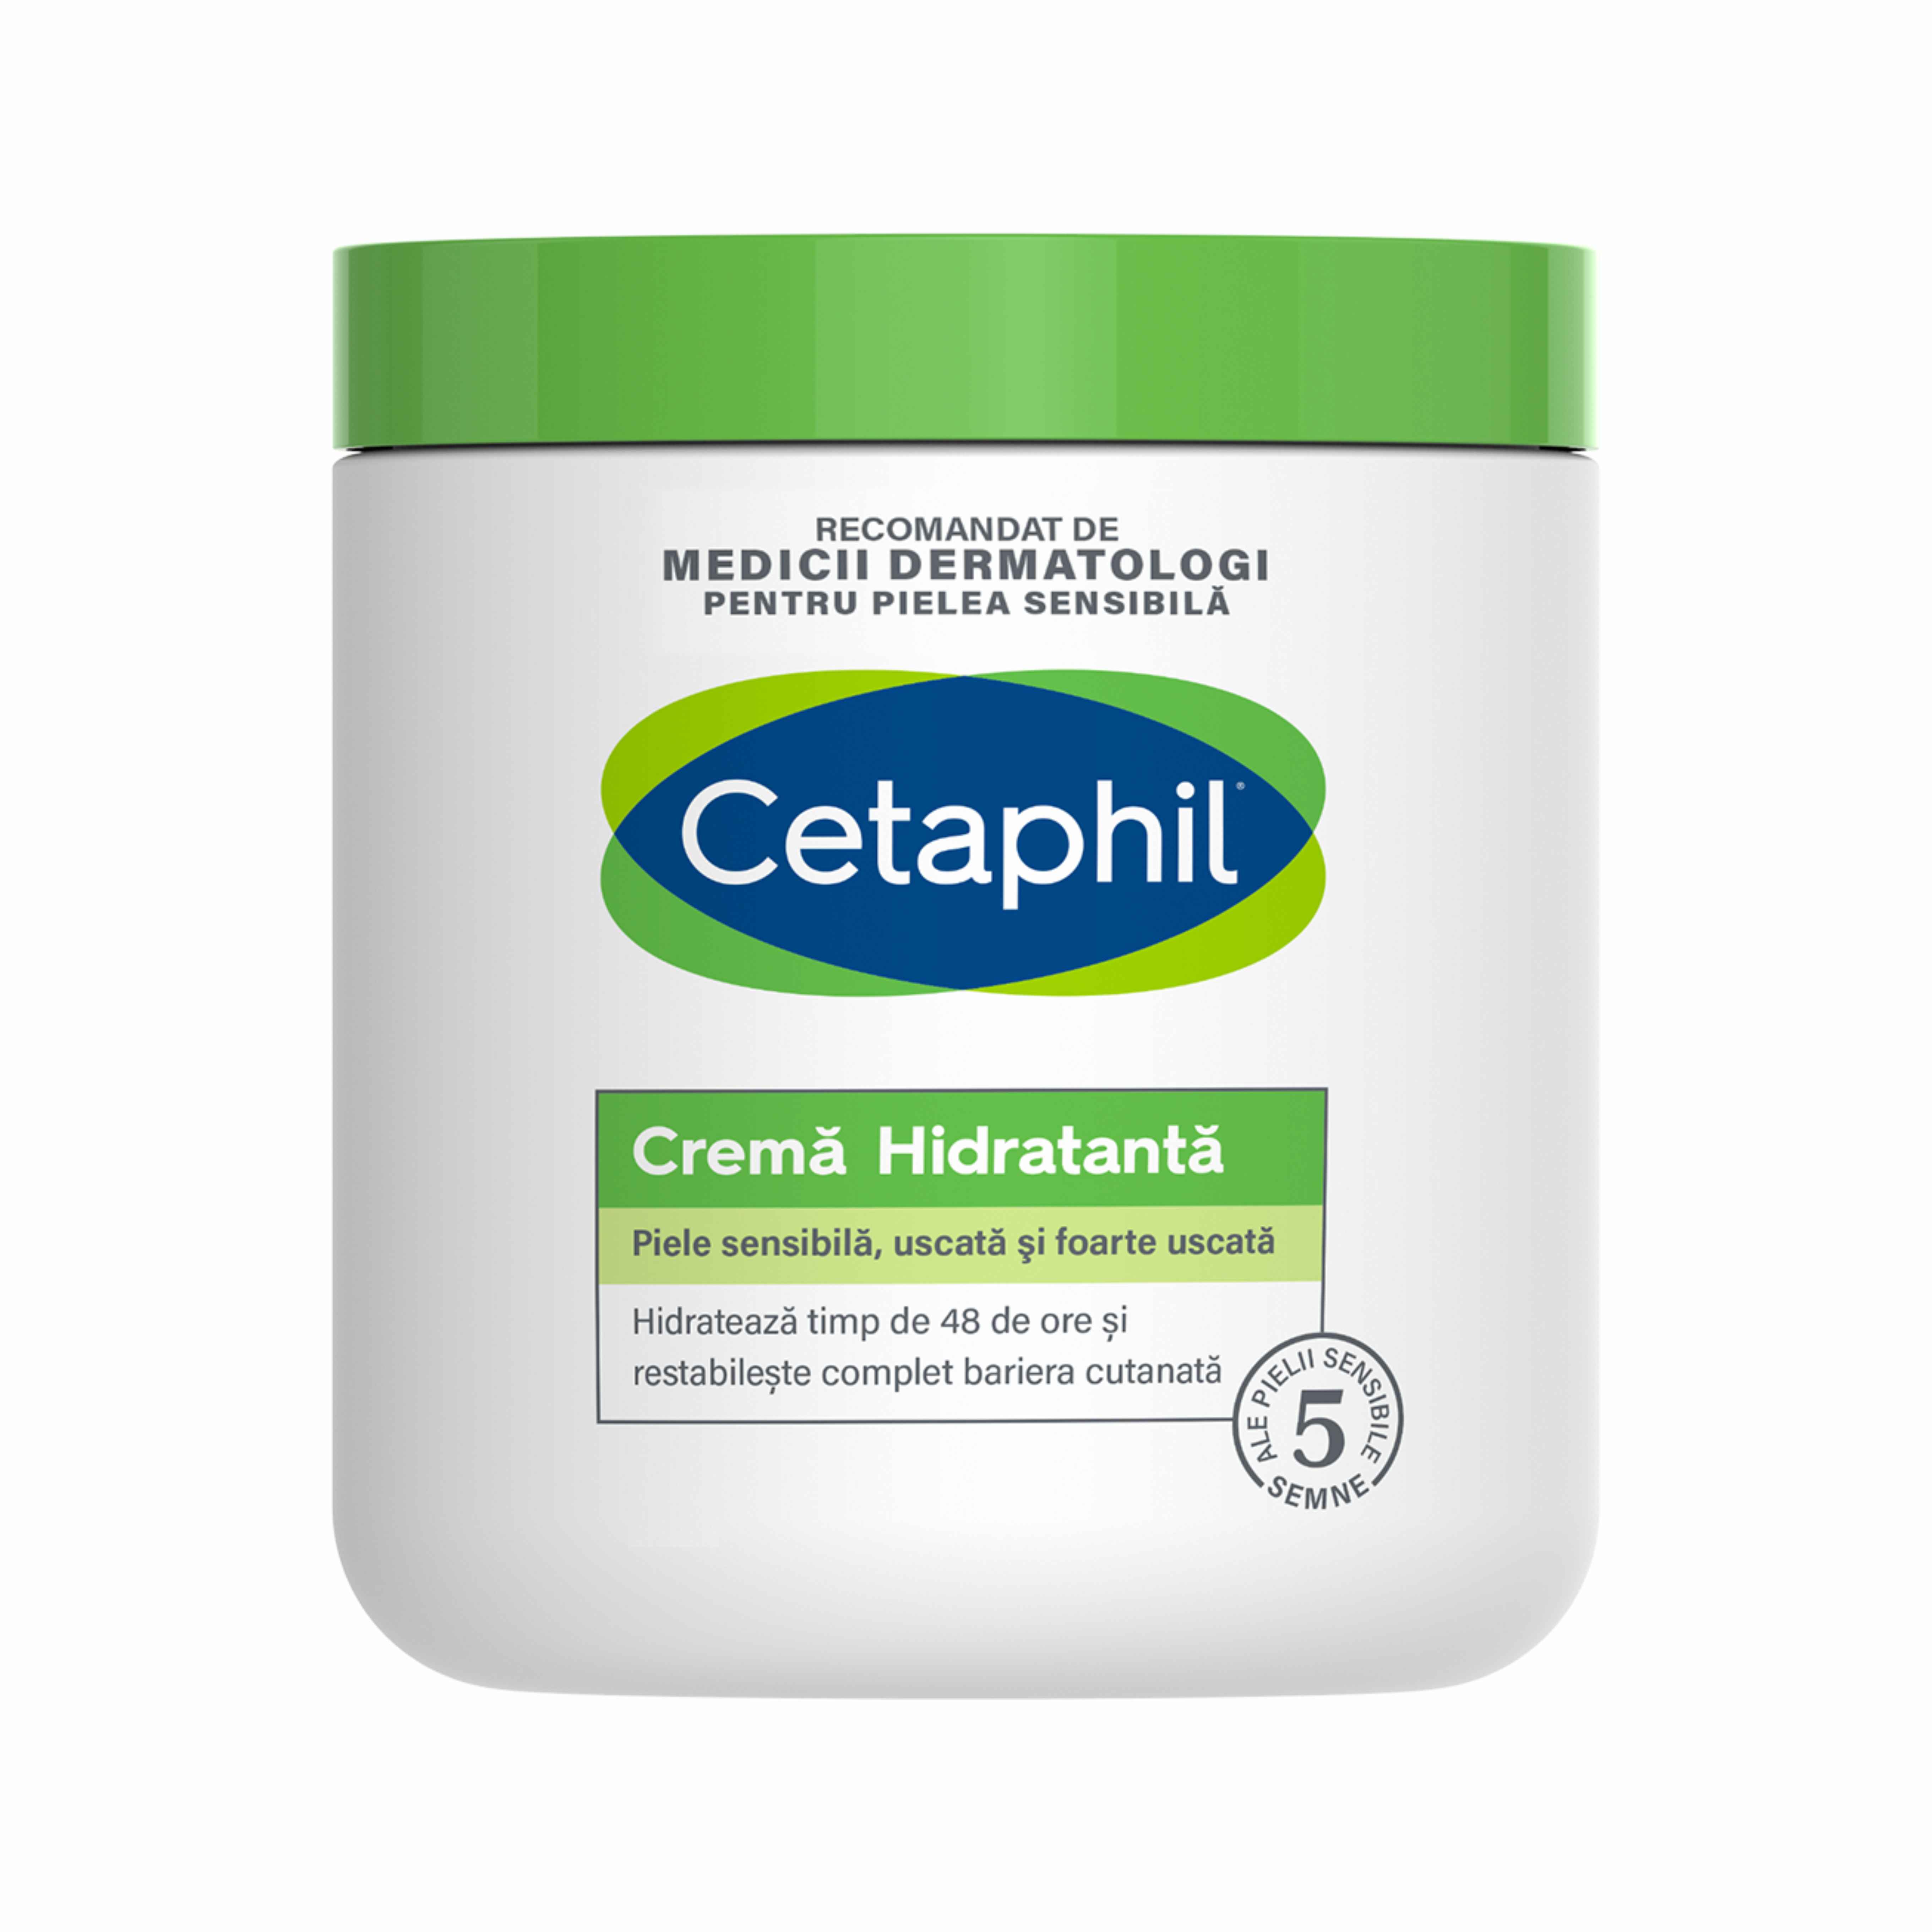 Crema hidratanta pentru piele sensibila Cetaphil, 450 g, Galderma